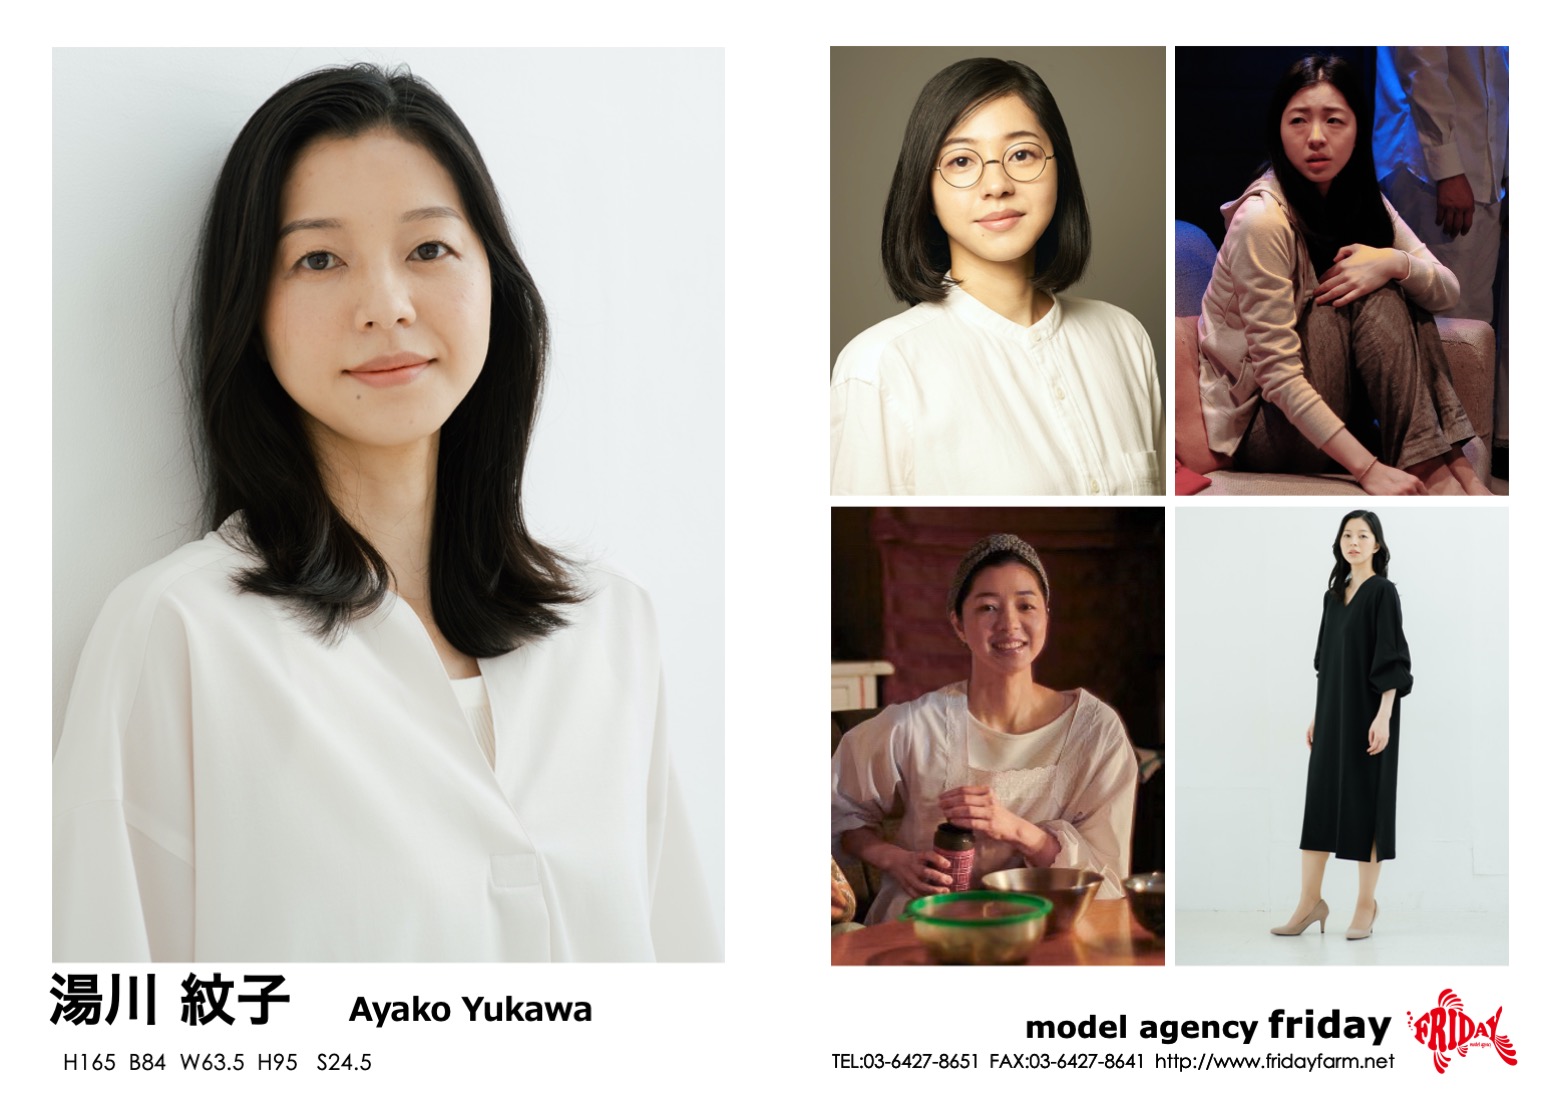 湯川 紋子 - Ayako Yukawa | model agency friday